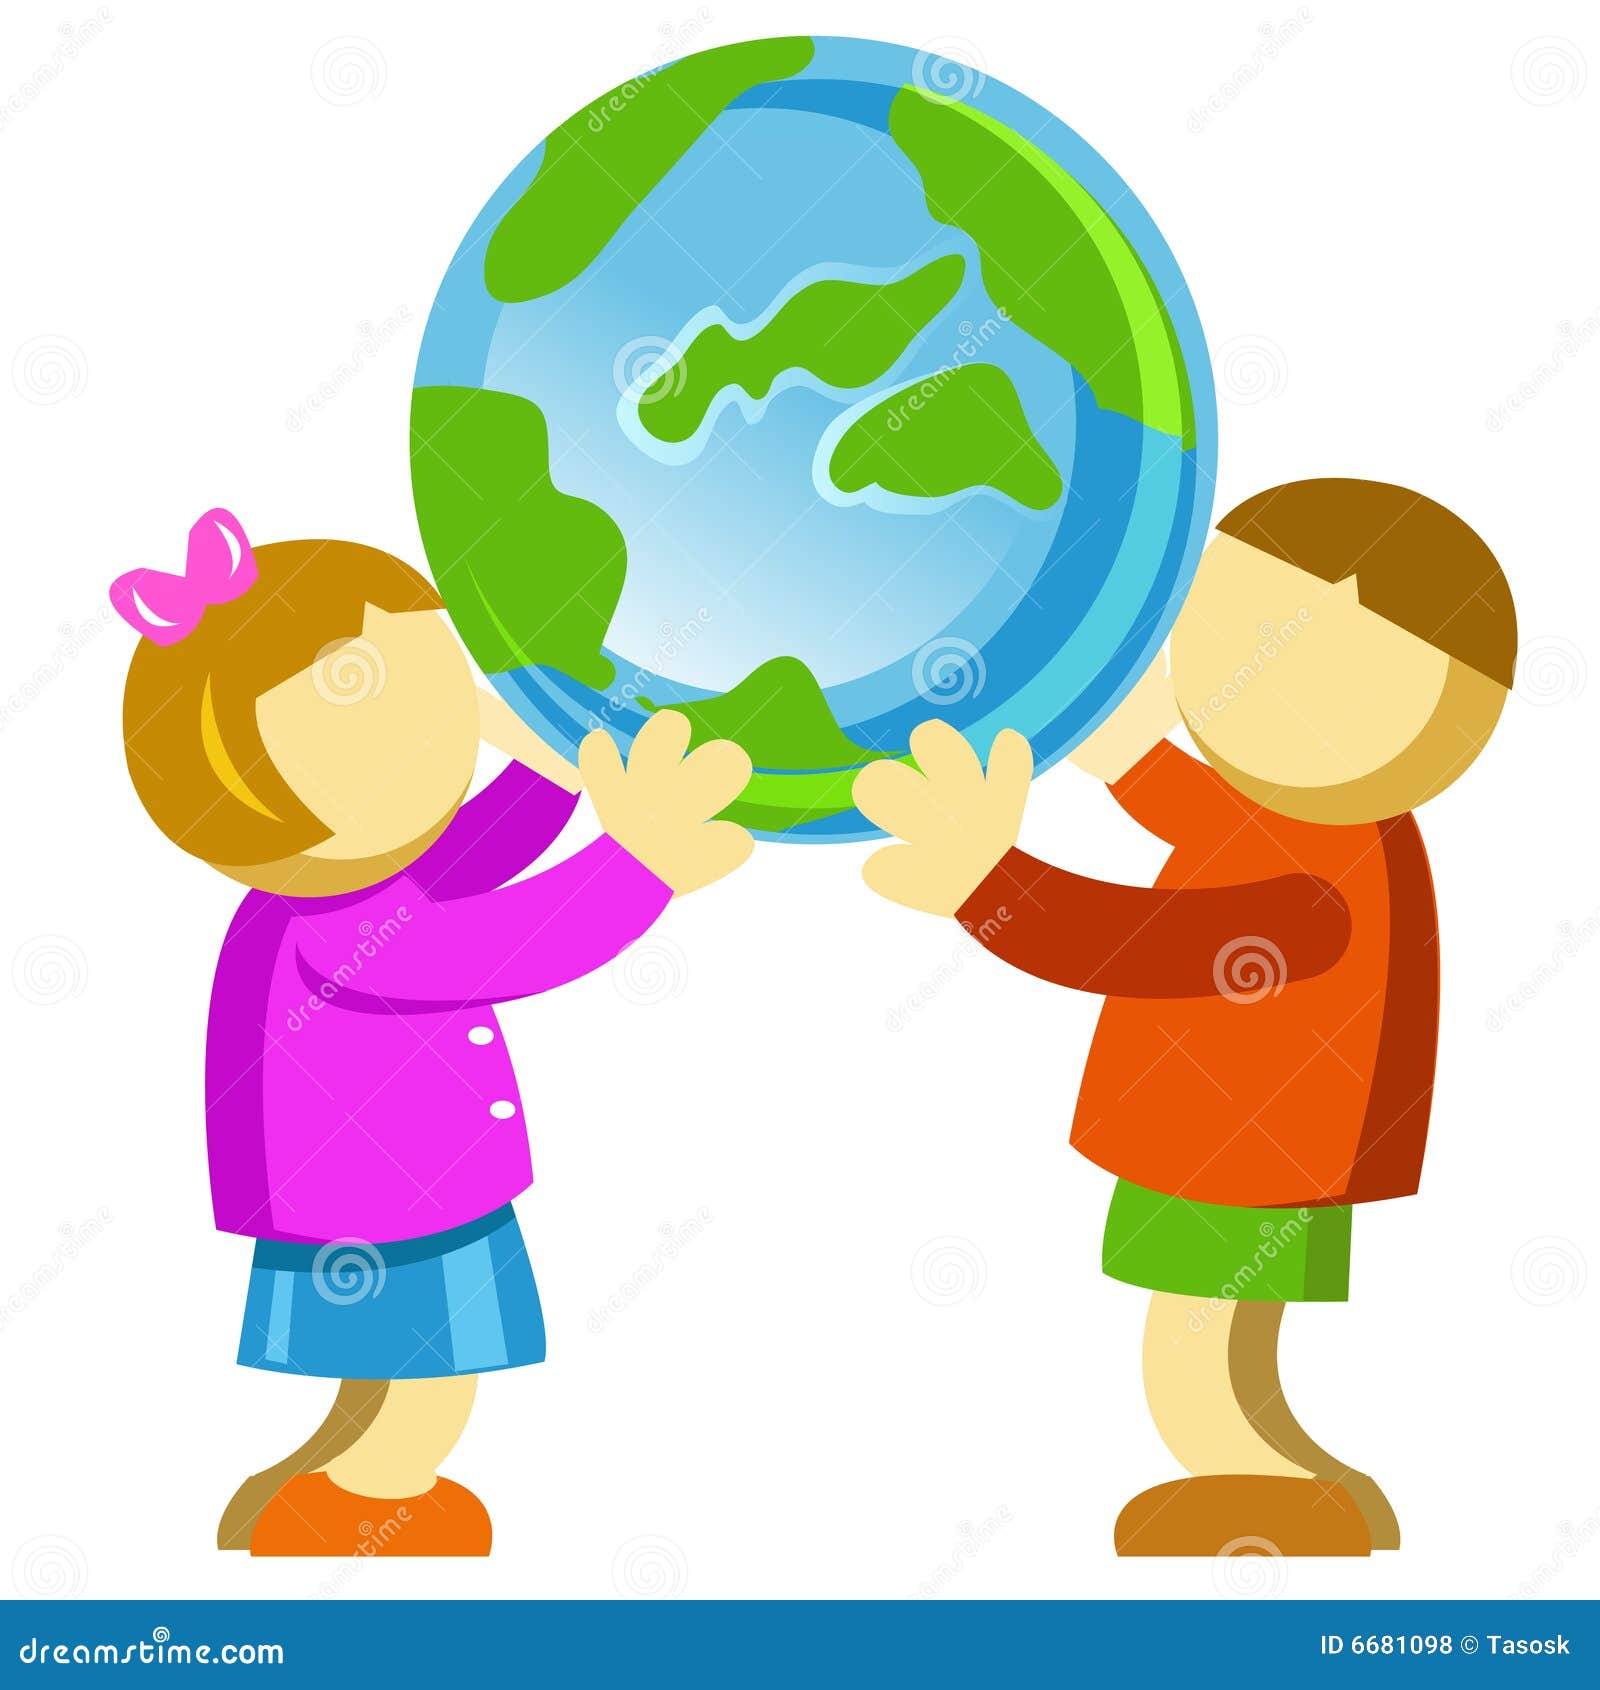 Забочусь о планете. Забота о планете земля. Заботимся о планете. Забота о планете для детей. Дети заботятся о планете.